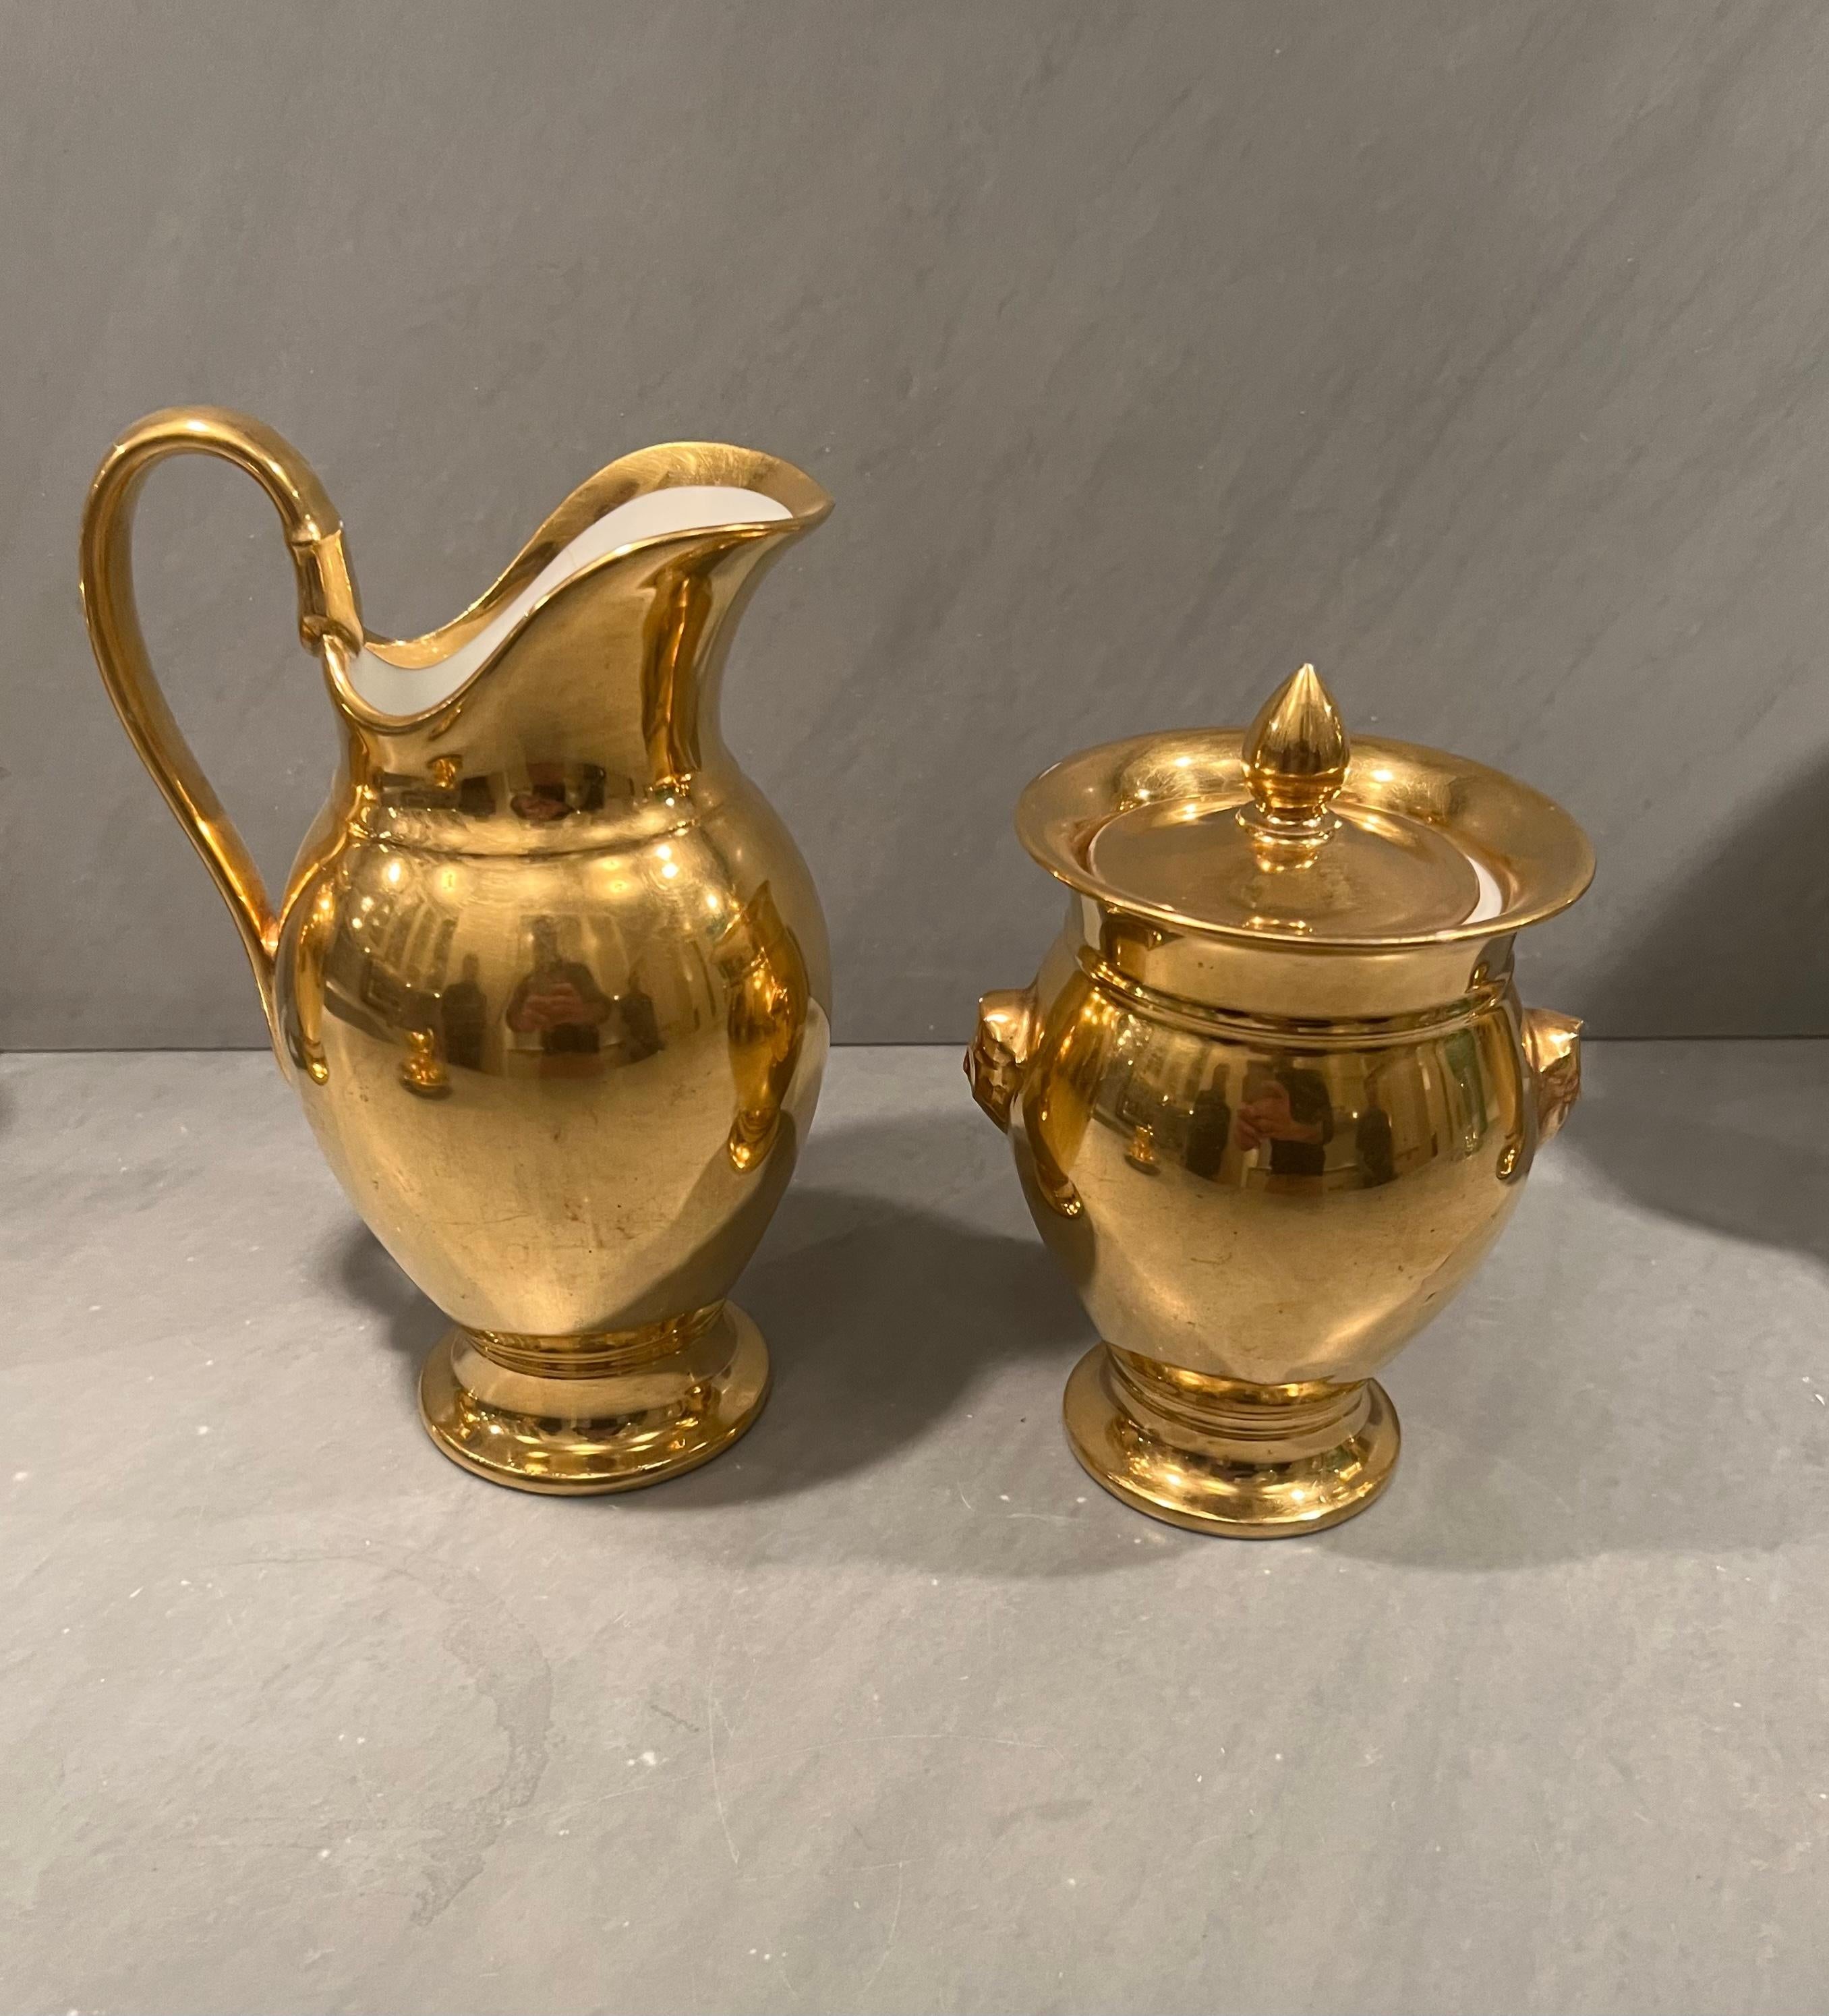 French Paris Gold Porcelain Tea / Coffee Set, 28 Pieces